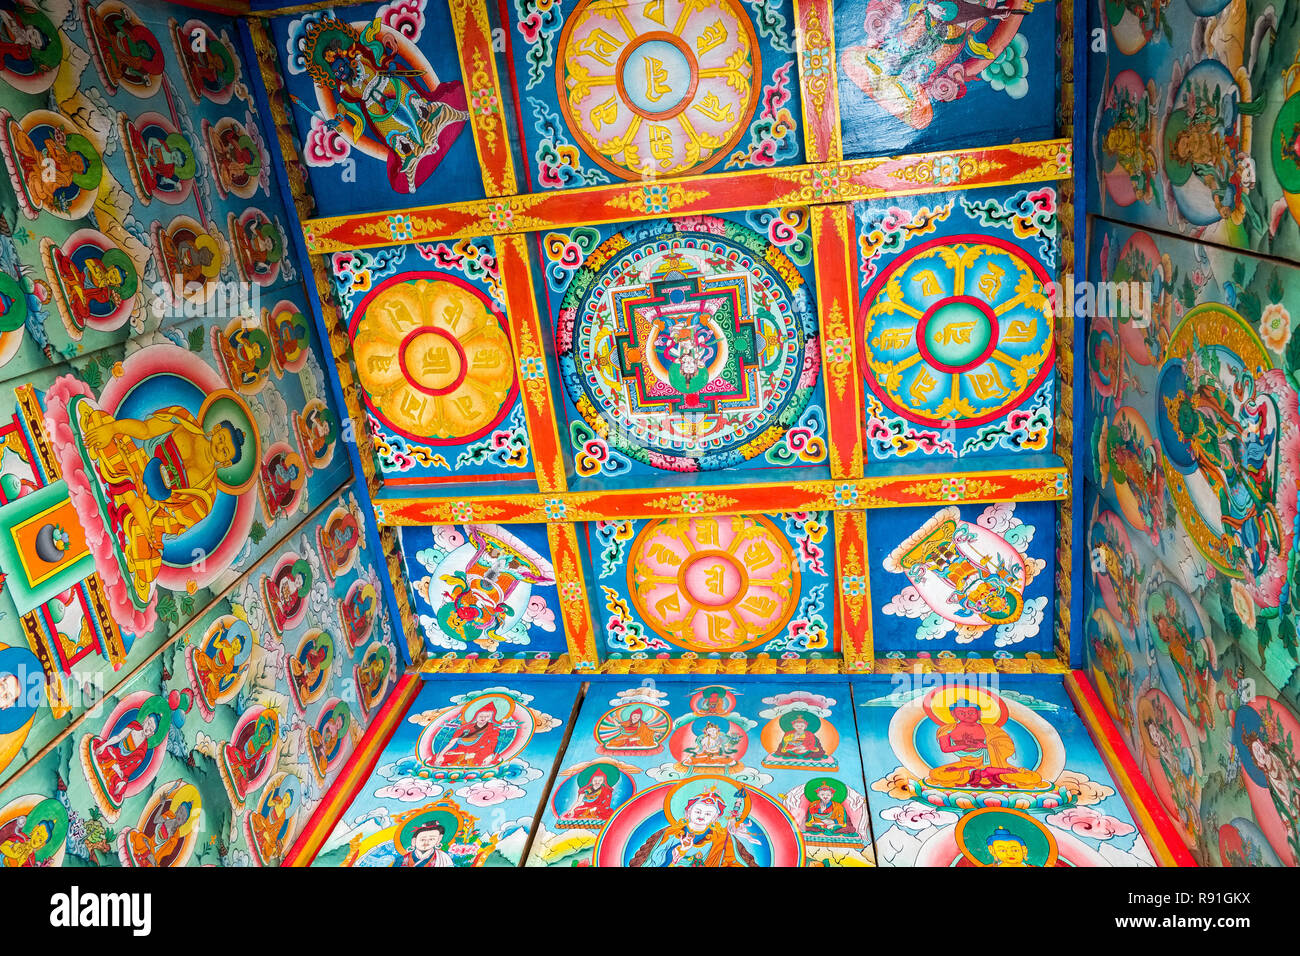 Très décoratives peintures de mandalas tibétains à l'intérieur d'une entrée du village de Kani (arch ), Népal Banque D'Images